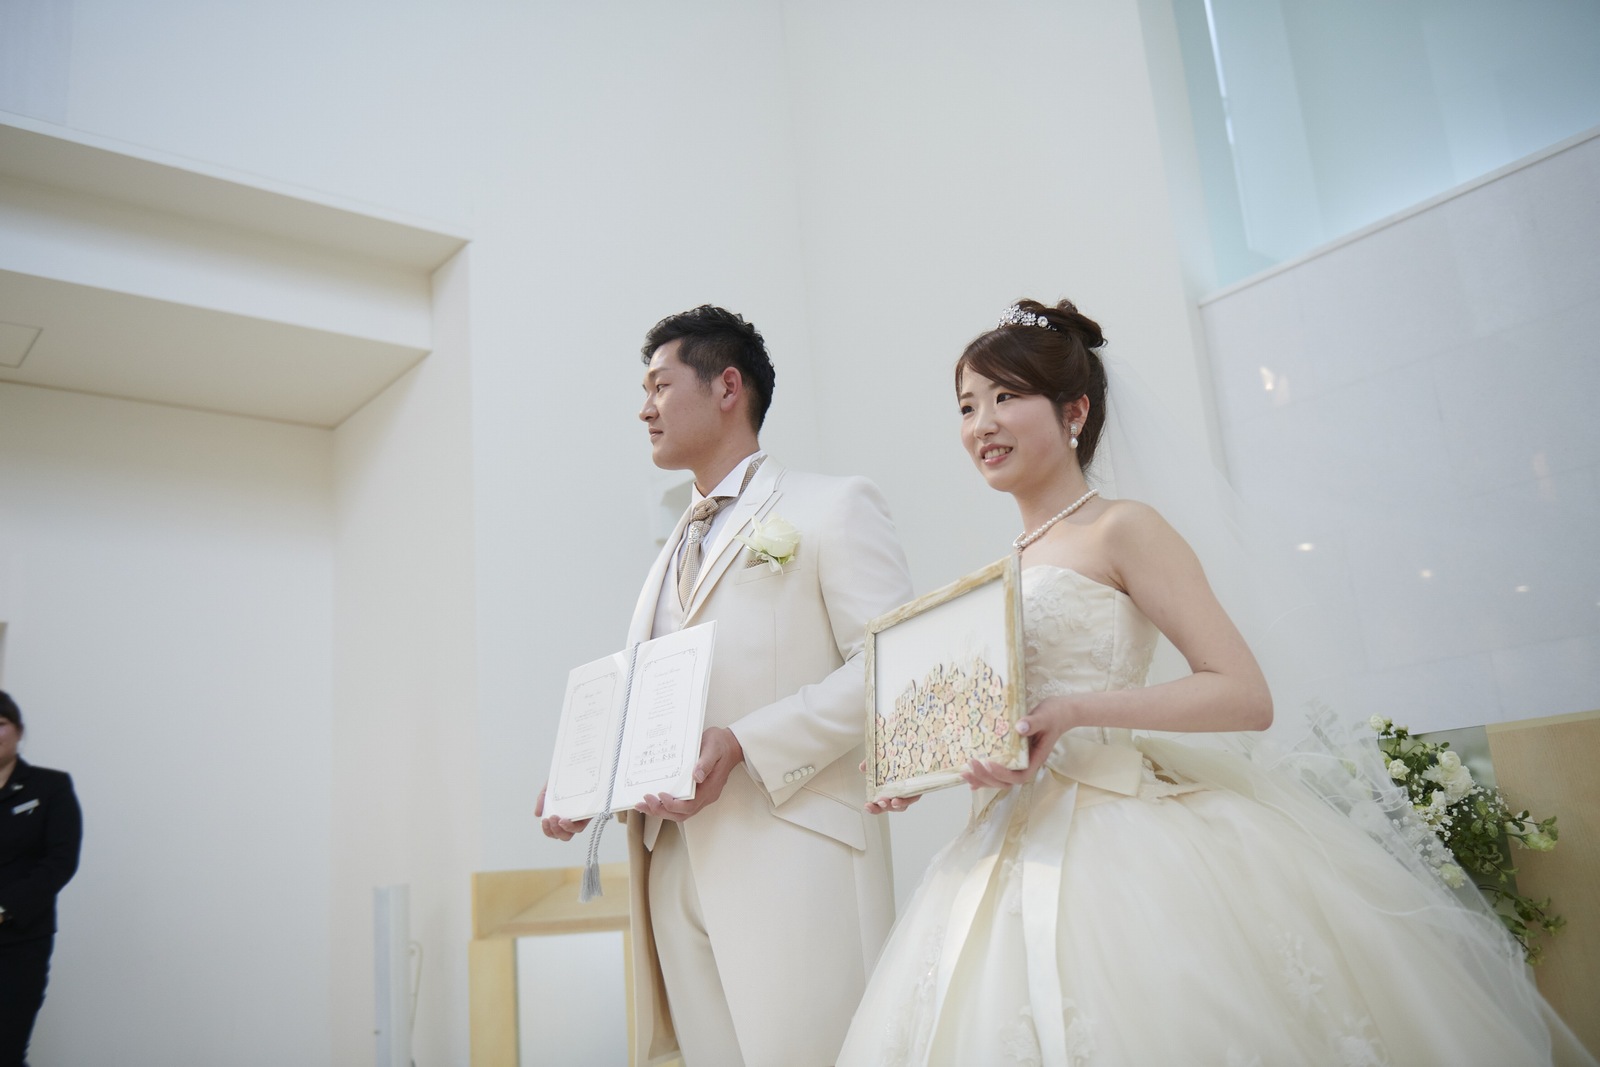 徳島市の結婚式場ブランアンジュでゲスト様から結婚の承認を受ける新郎新婦様